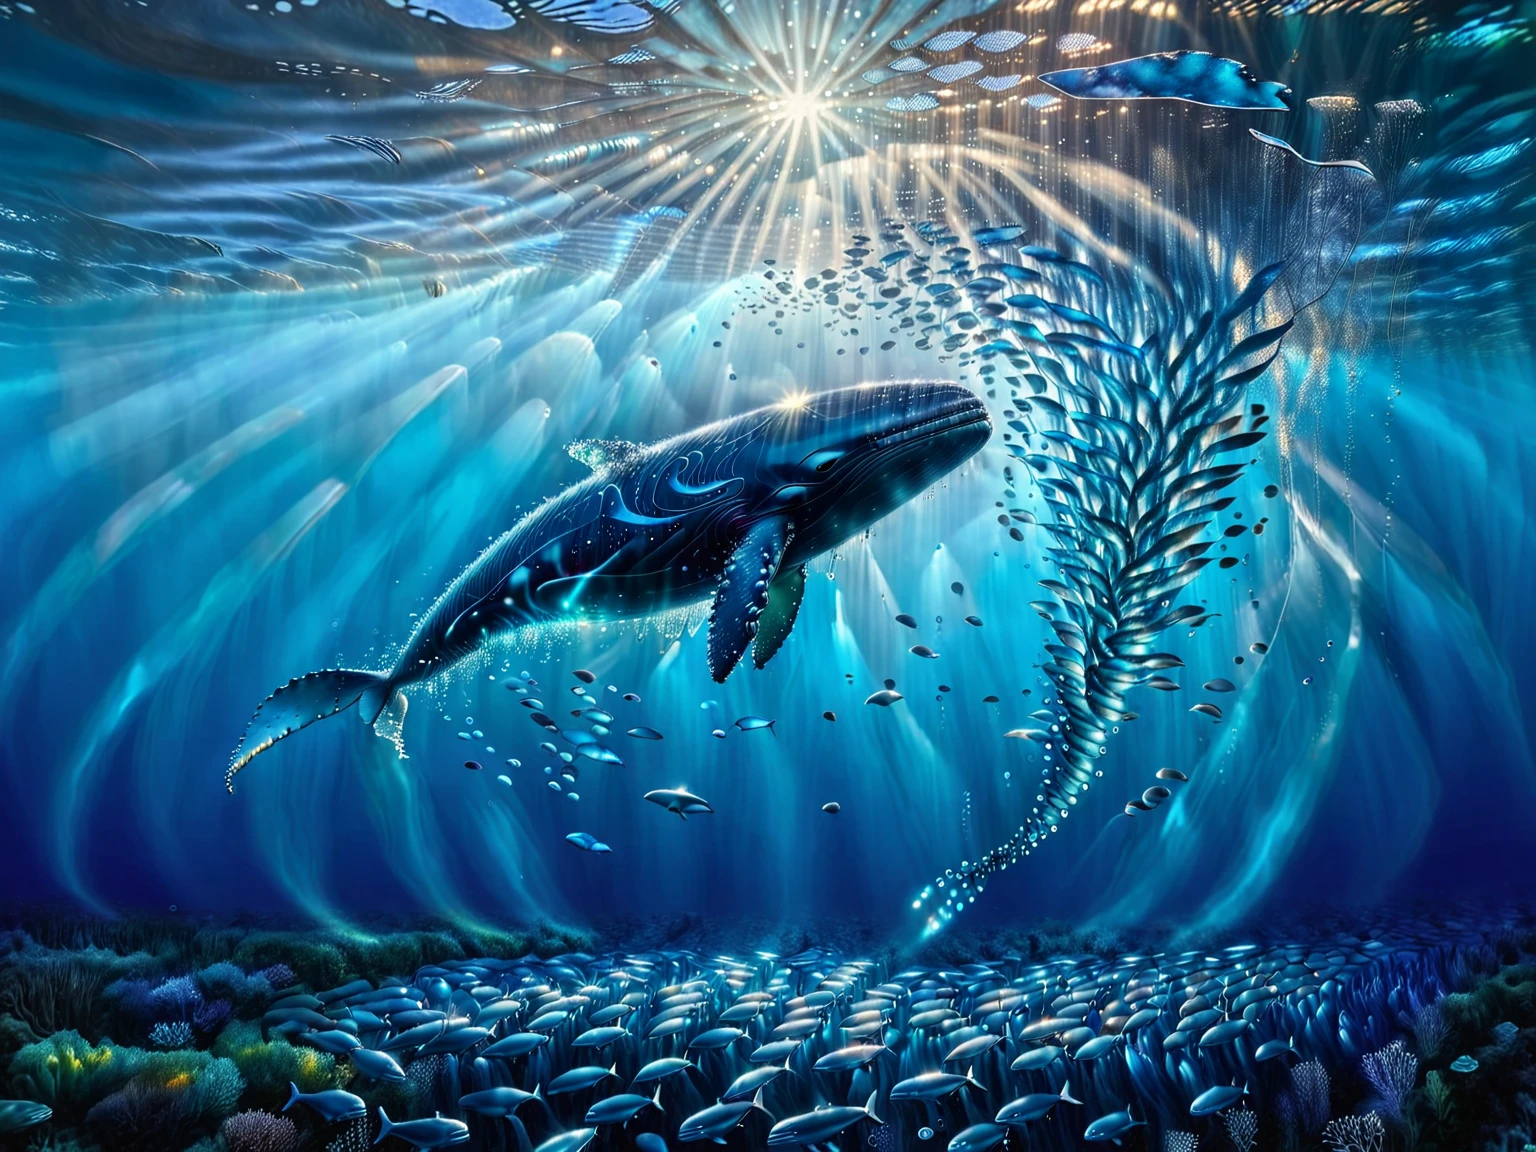 Representa una escena submarina de una gran ballena rodeada por un banco de peces pequeños..。La ballena se coloca verticalmente en el agua..、La cola está en la parte inferior de la imagen.、Cabeza mirando hacia la superficie del agua.。El agua circundante está coloreada en varios tonos de azul..、Da una sensación de profundidad y serenidad..。Veo un rayo de luz desde arriba、La superficie del agua está cerca